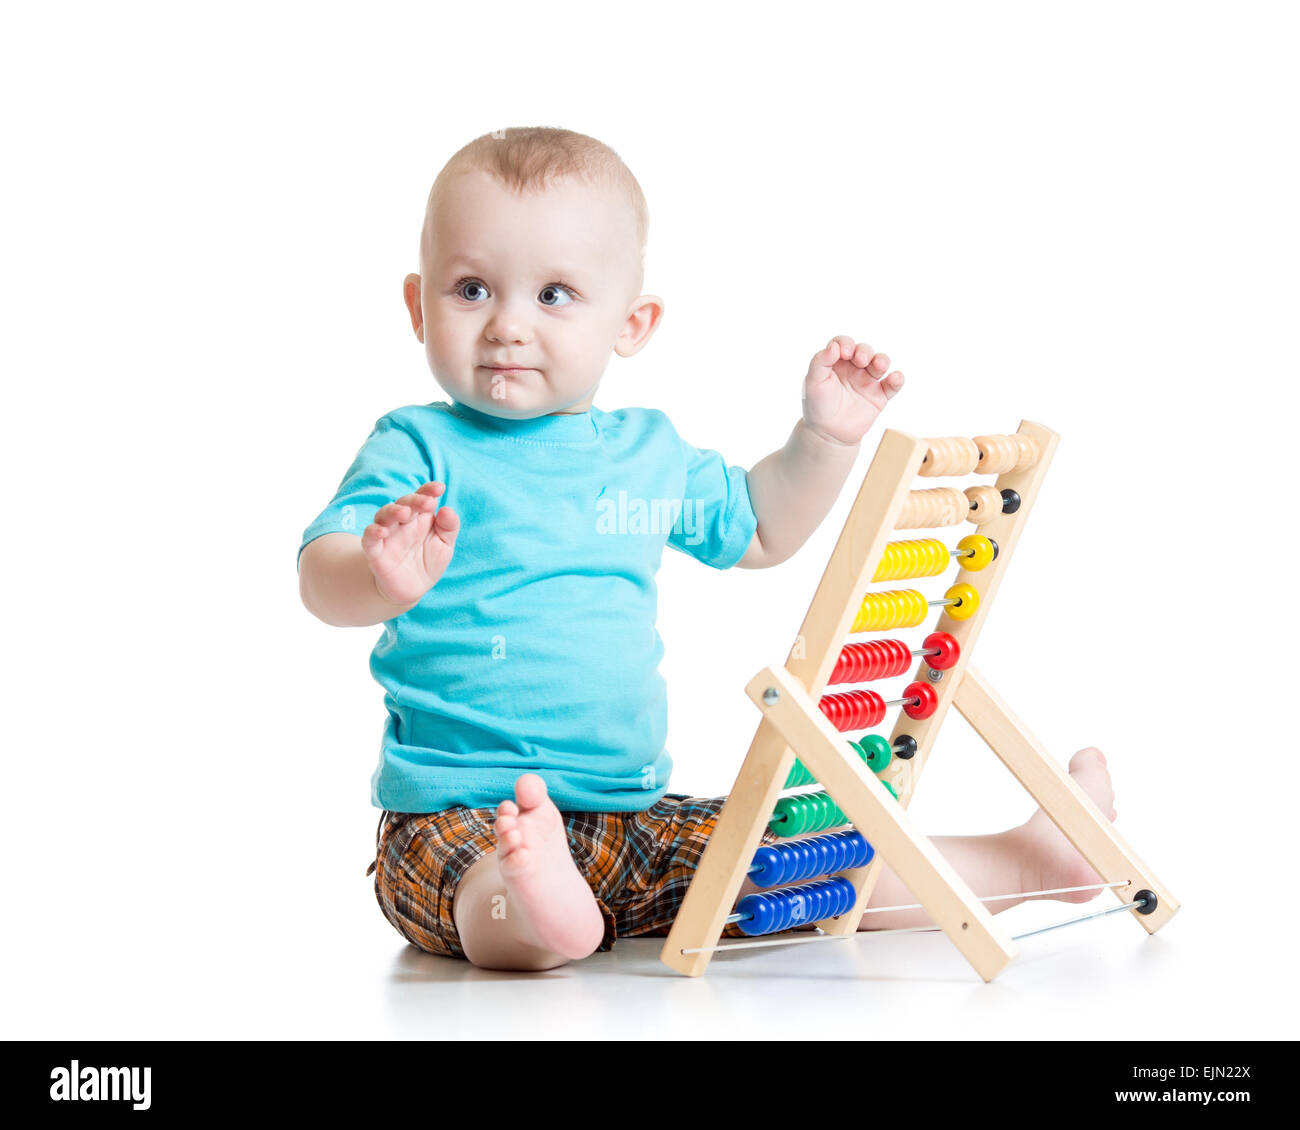 Bébé jouant avec un boulier coloré Banque D'Images